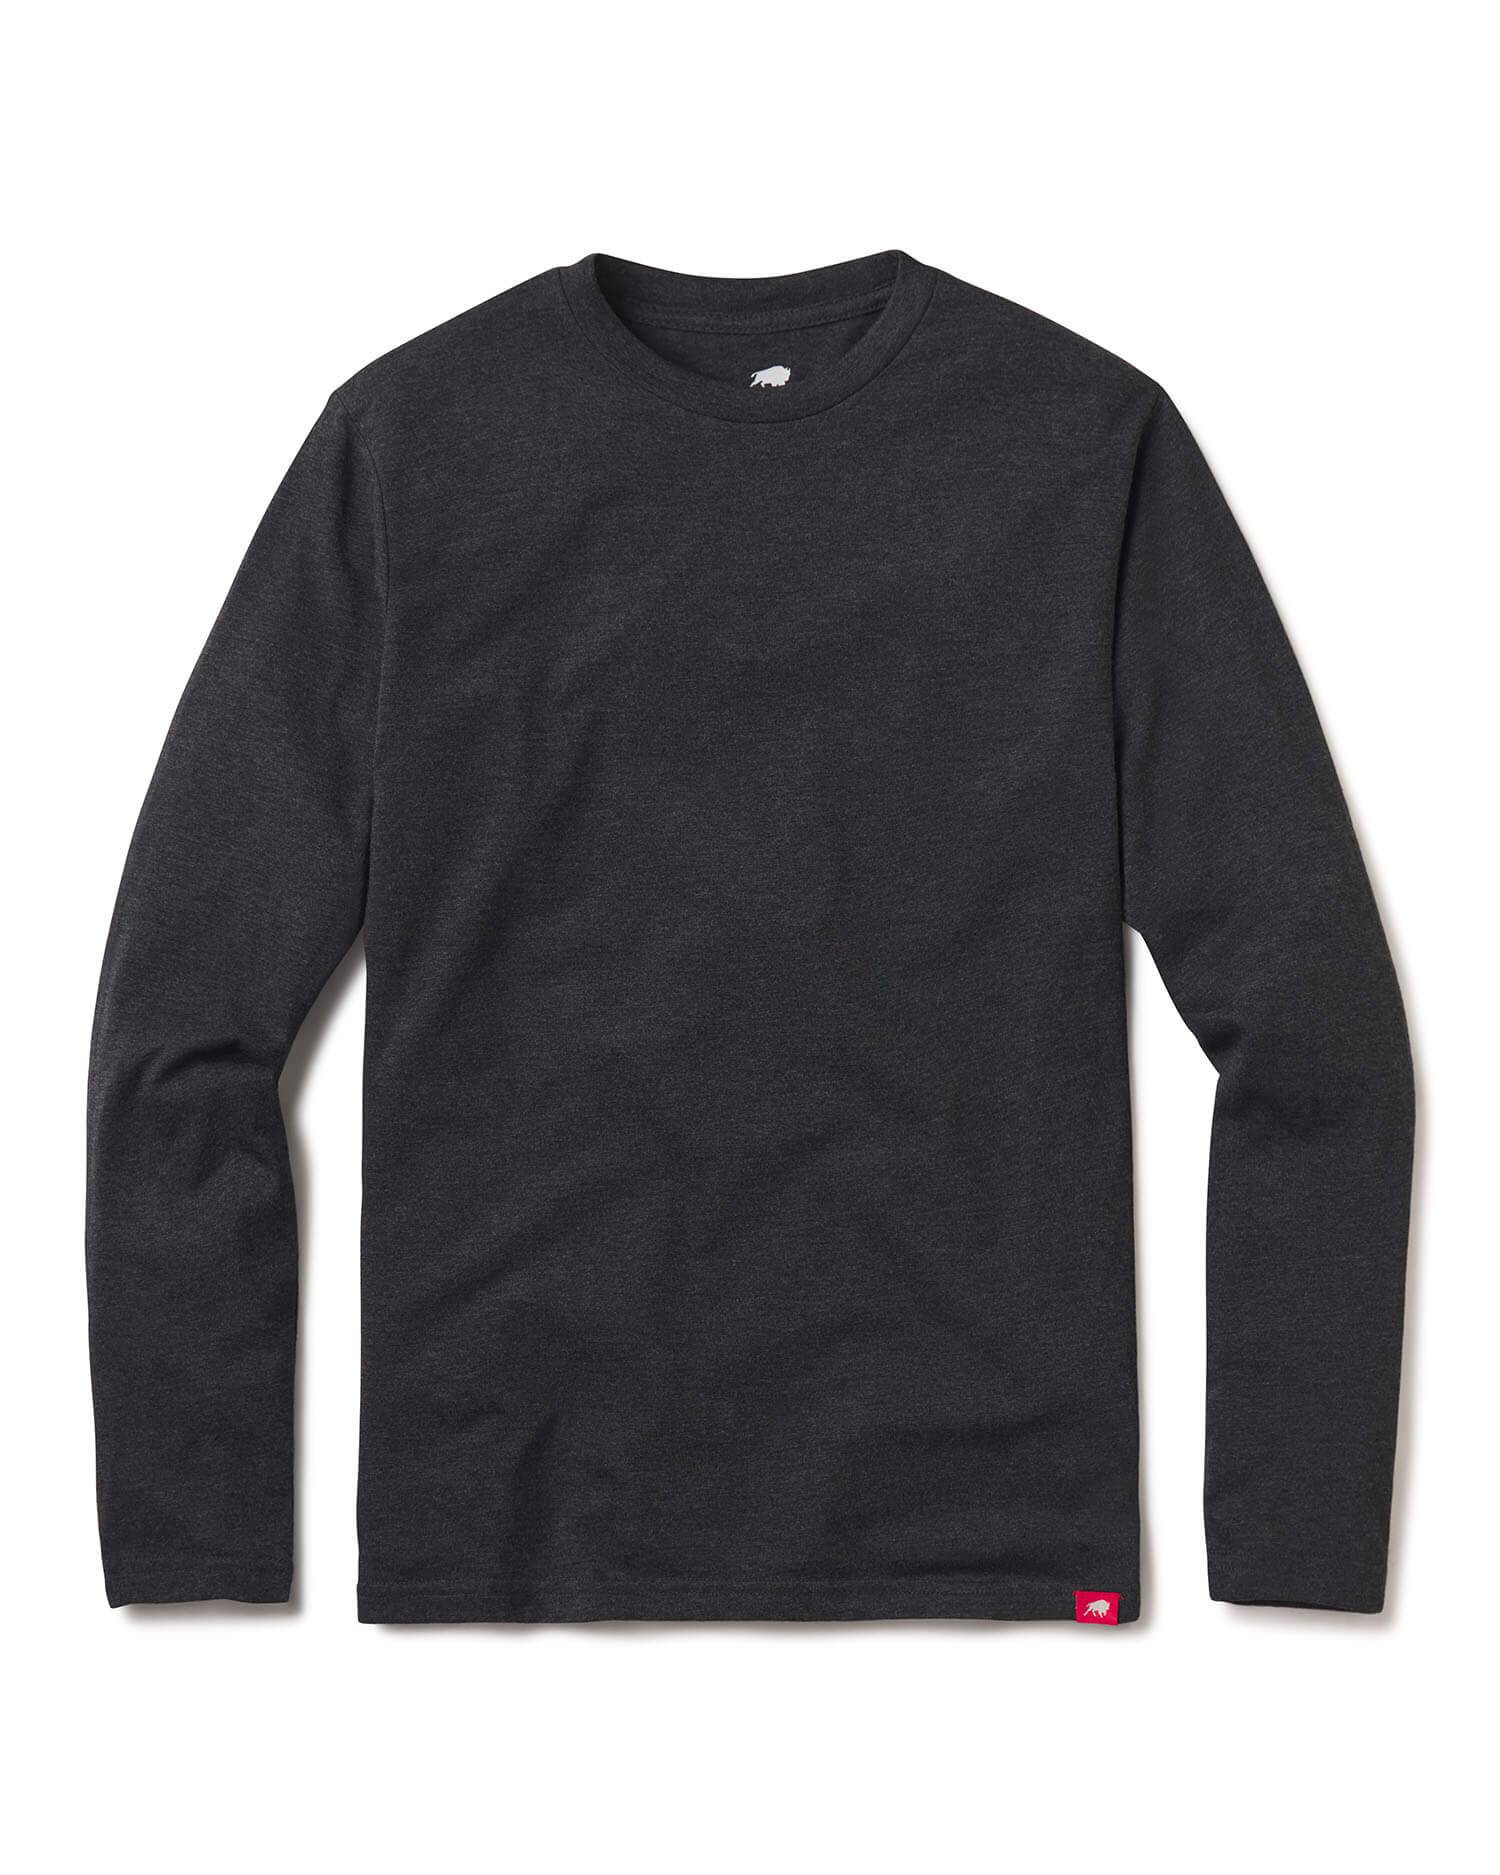 Sportiqe Men's Long Sleeve  Comfy T-Shirt - Soft Jersey Knit - Sportiqe Apparel 